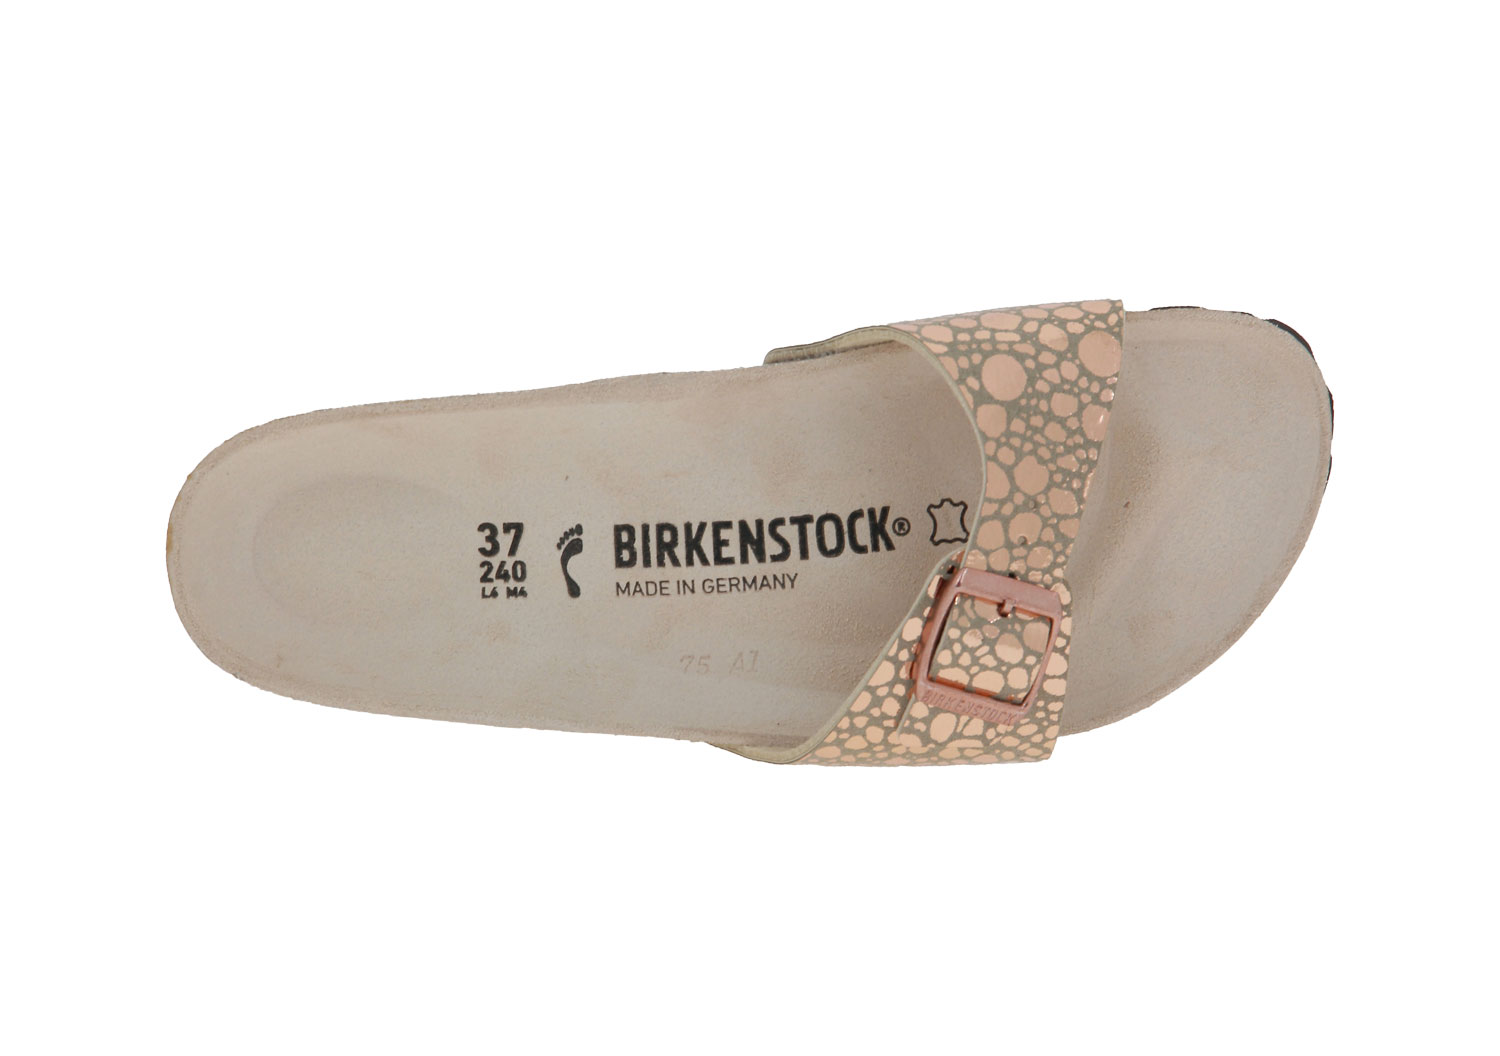 birkenstock-2719-00057-4